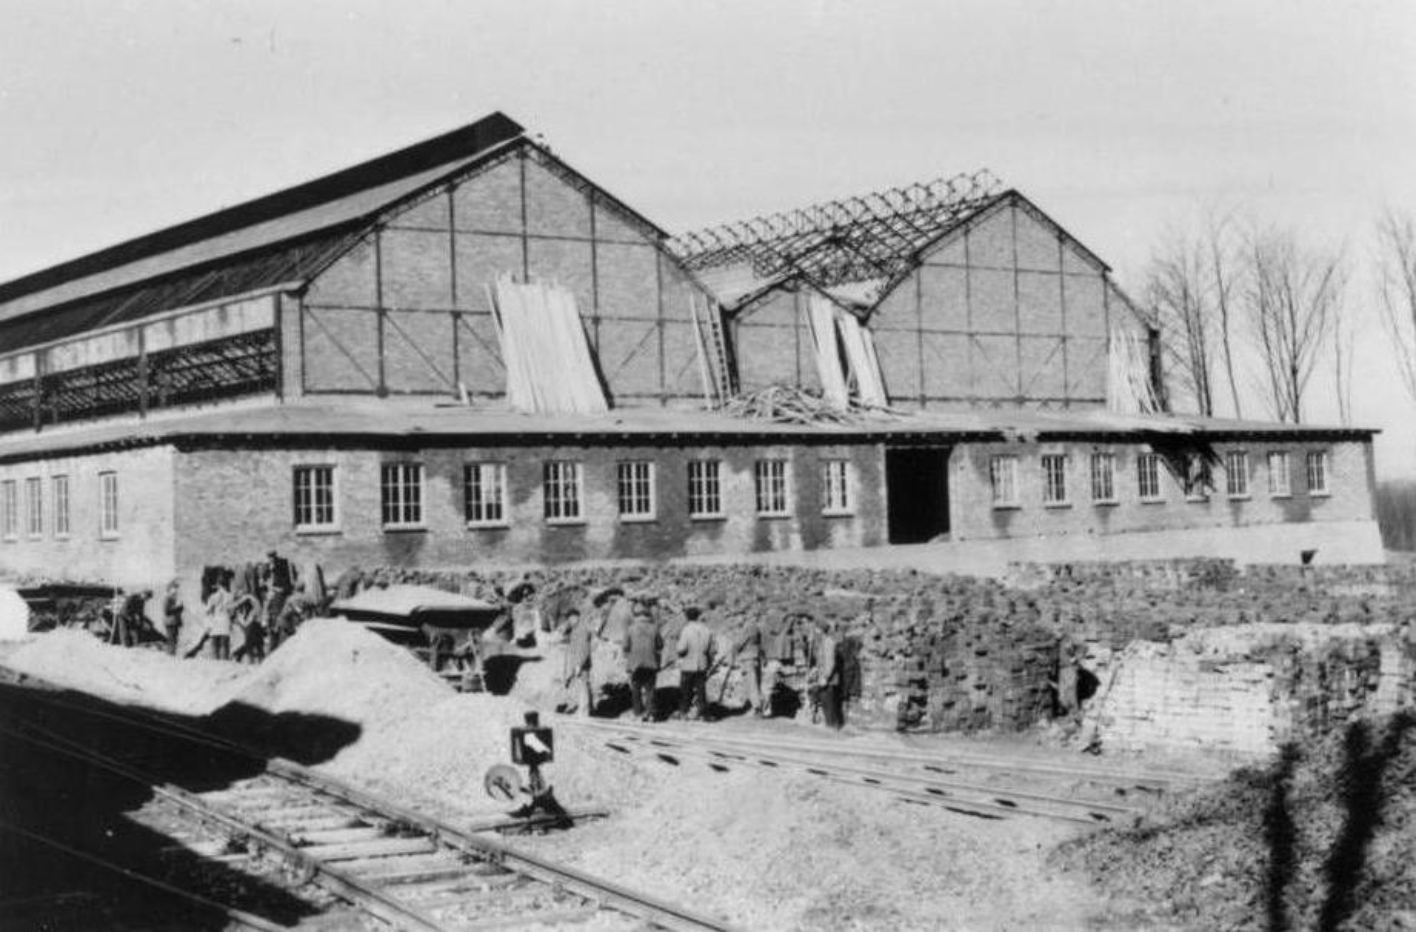 Gleisanschluss der Buchenwald Bahn in den Gustloff-Werken II. Im Hintergrund arbeitende Häftlinge. Vom Werk ist das im Bau befindliche, zweigeteilte Dach einer großen Halle zu sehen. Baumaterial ist an verschiedenen Stellen aufgeschichtet.